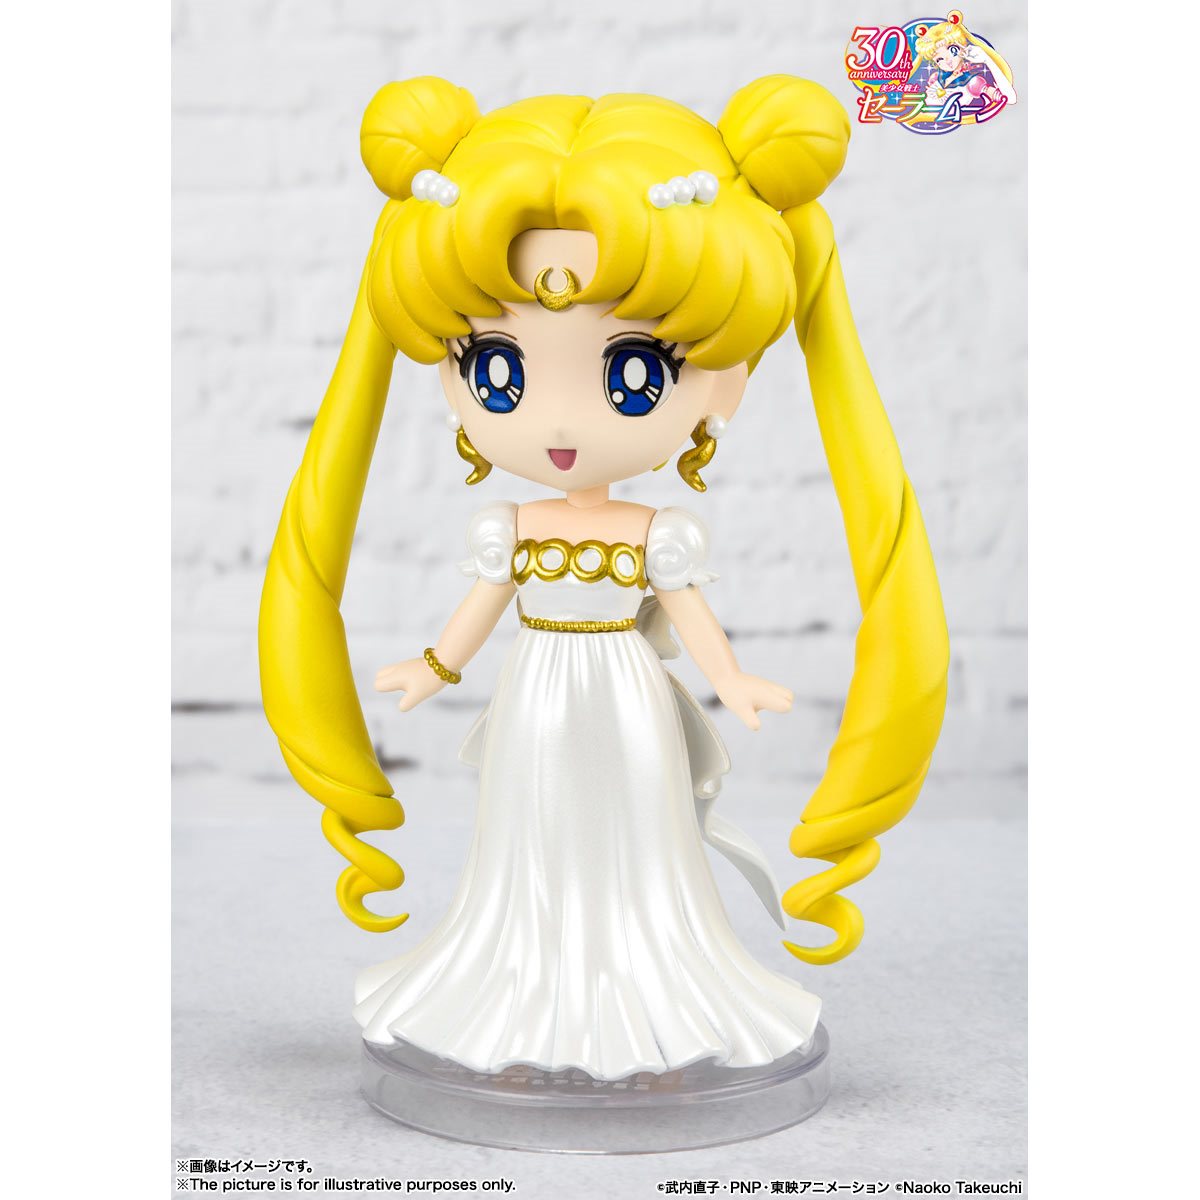 Bandai Tamashii Nations Mini FiguArts: Pretty Guardian Sailor Moon - Princesa Serenity Minifigura